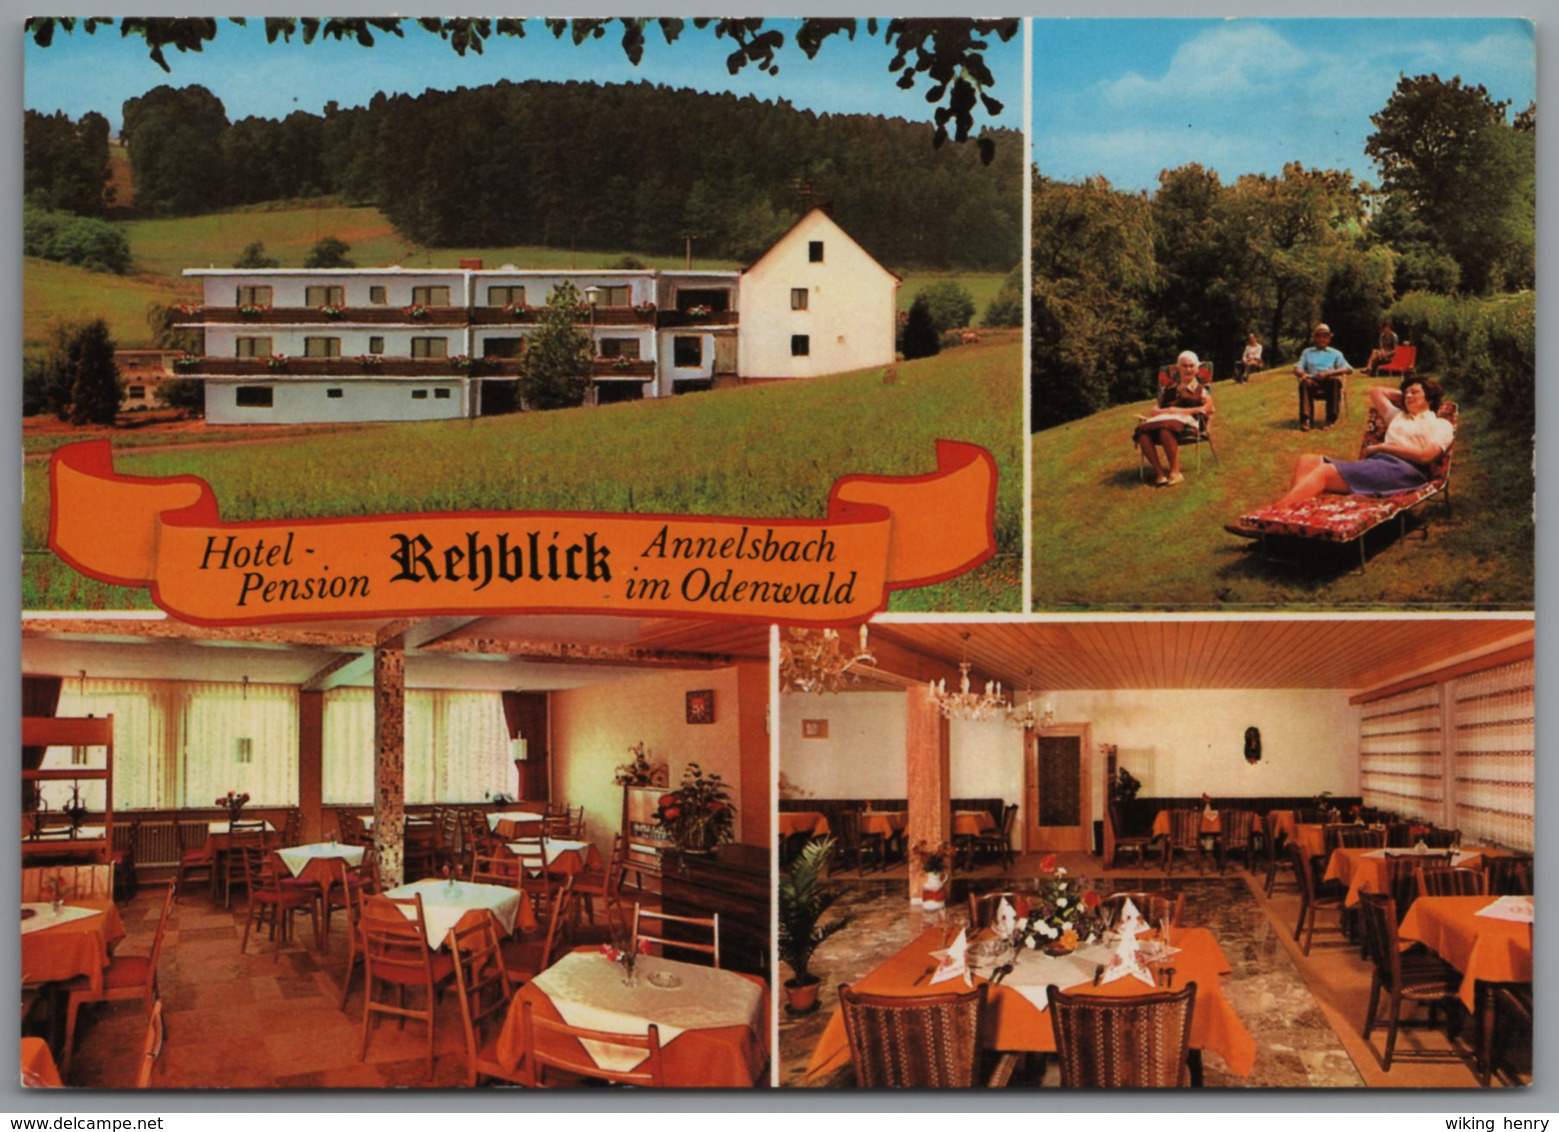 Höchst Im Odenwald Annelsbach - Hotel Pension Rehblick - Höchst